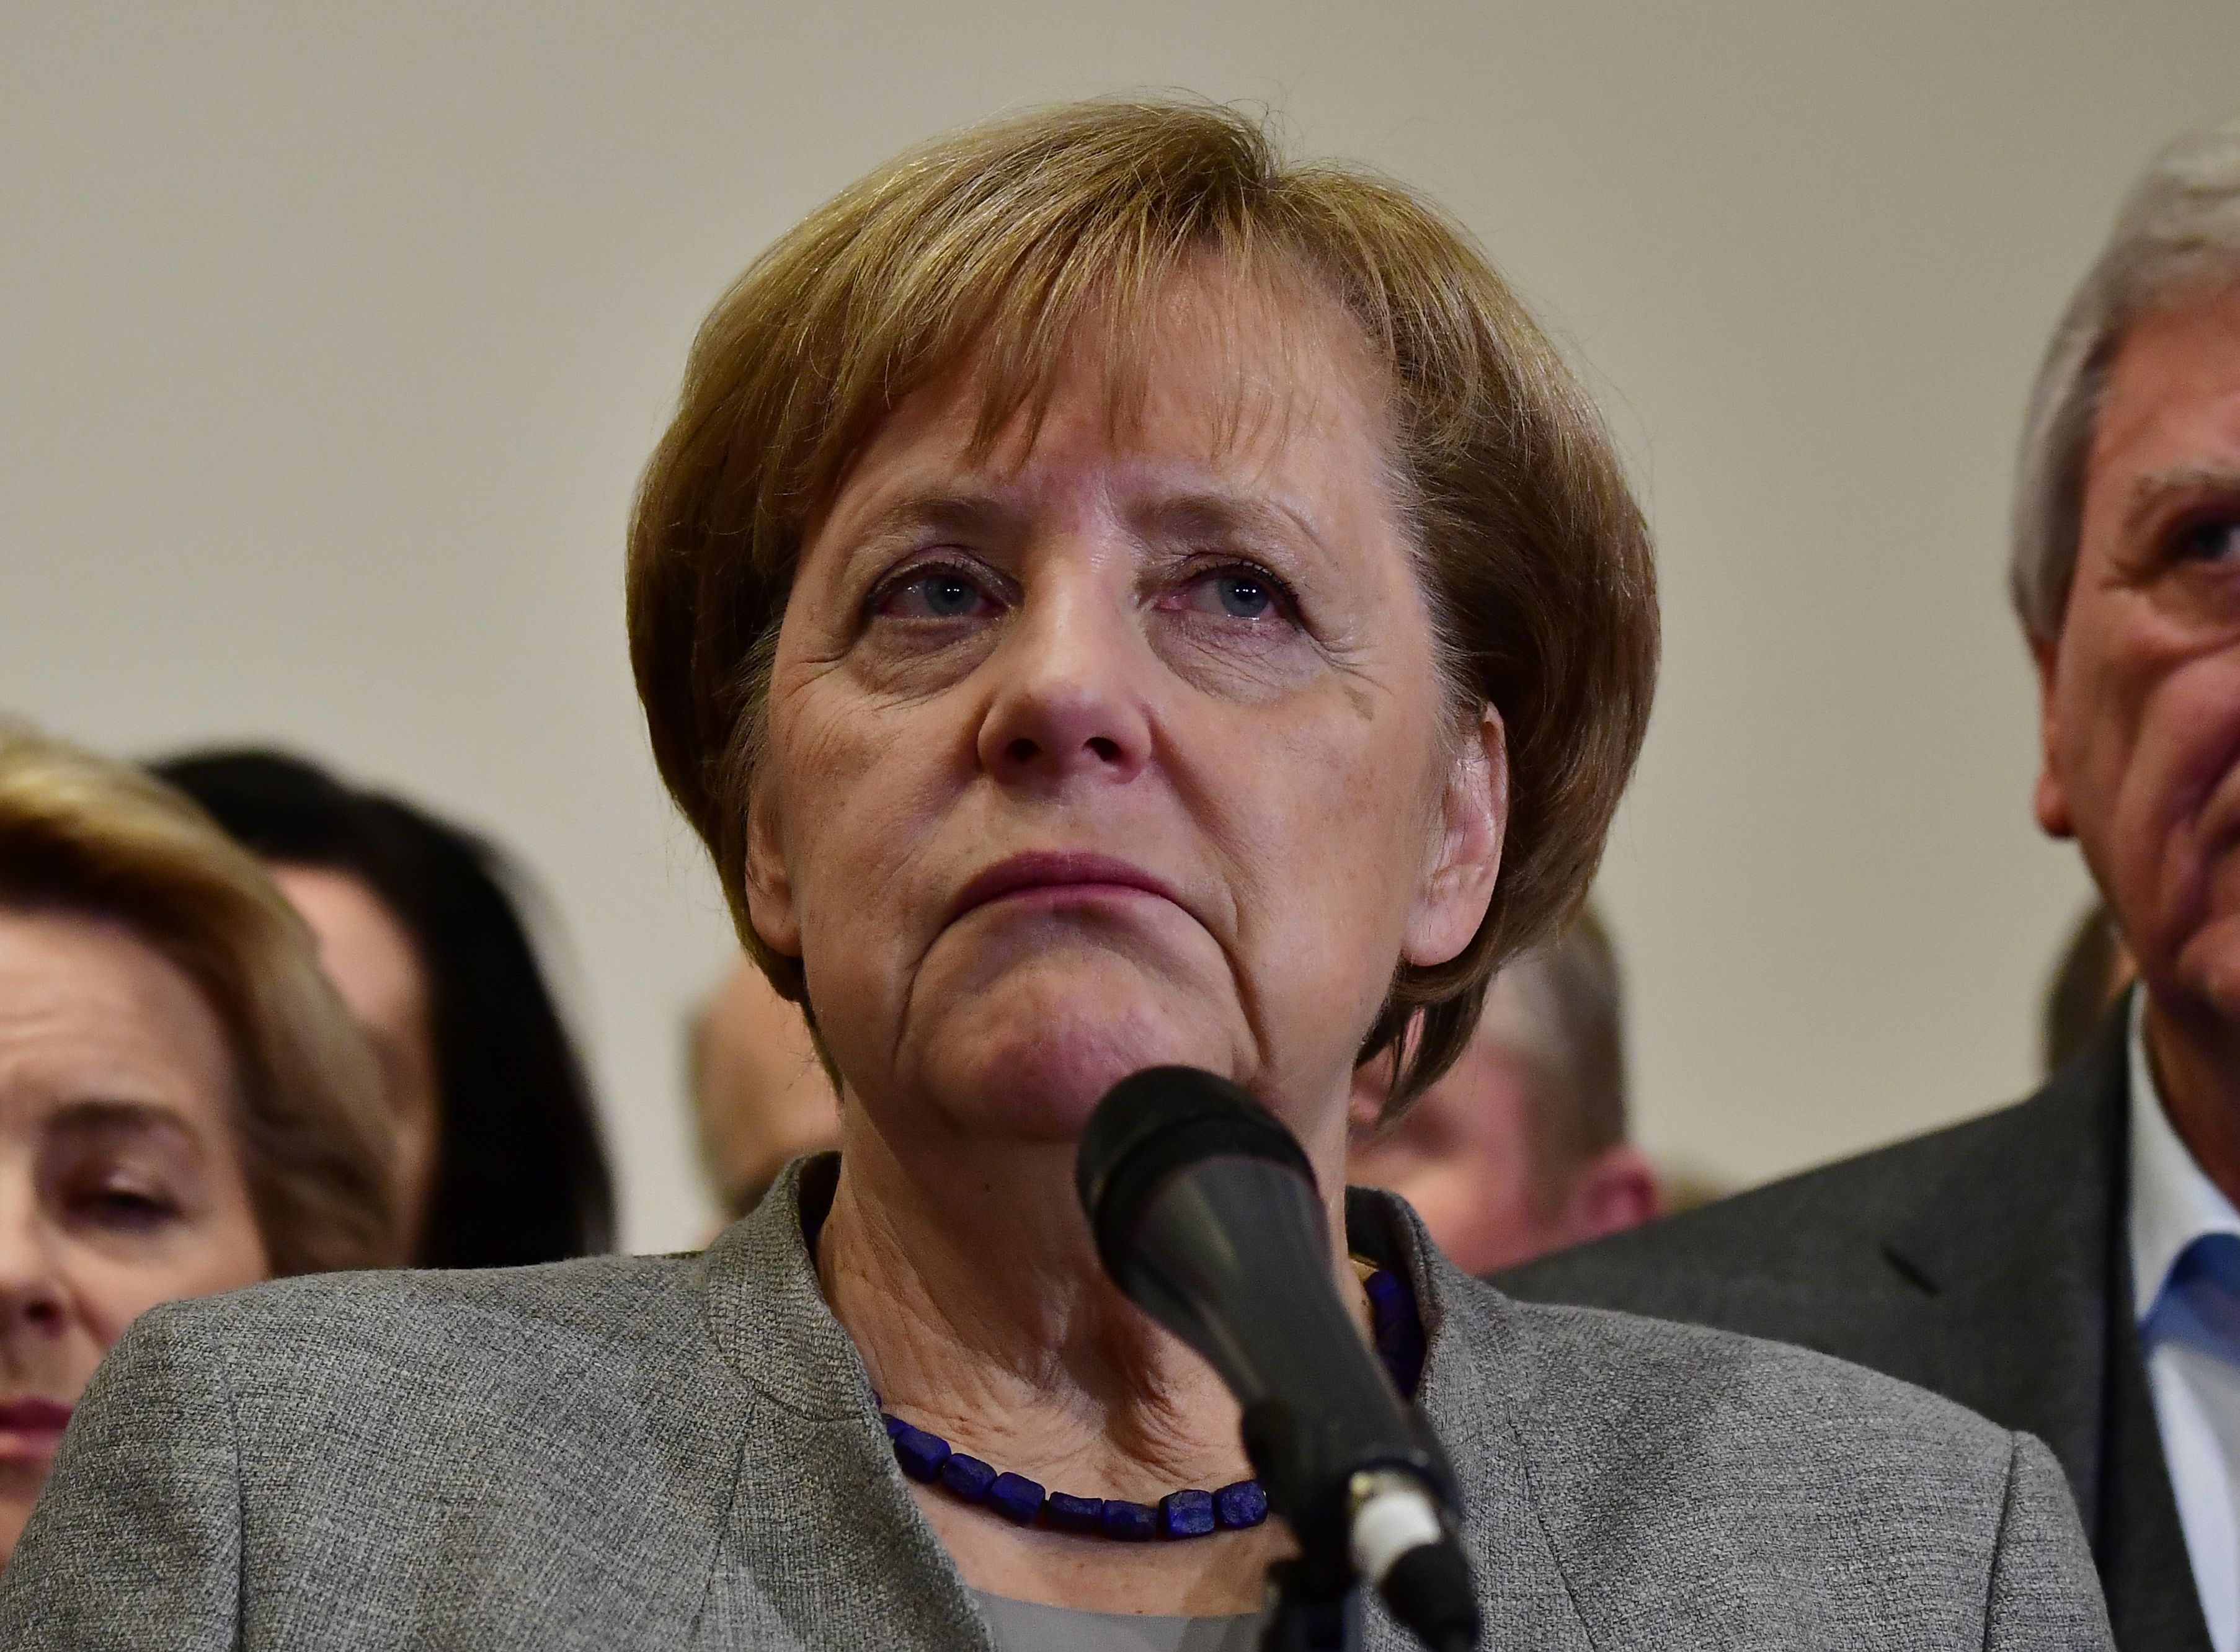 المستشار الألماني وزعيم حزب الاتحاد الديموقراطي المسيحي انجيلا ميركل